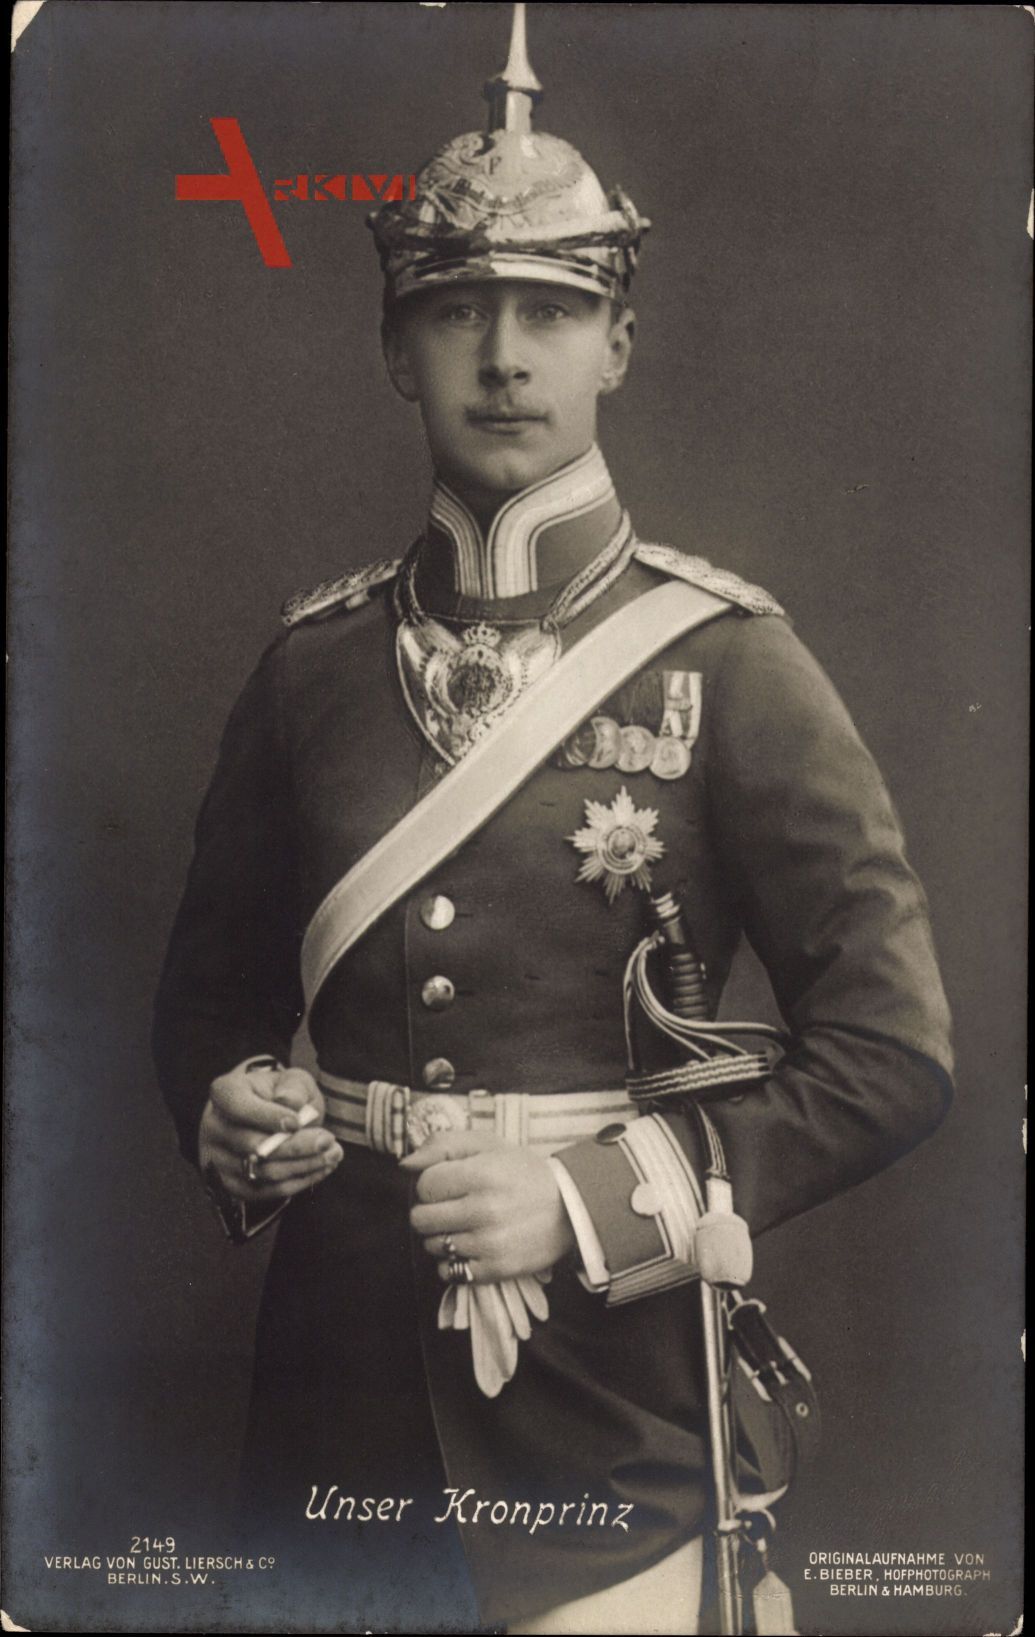 Kronprinz Wilhelm von Preussen, Portrait, Liersch 2149, Uniform, Pickelhaube